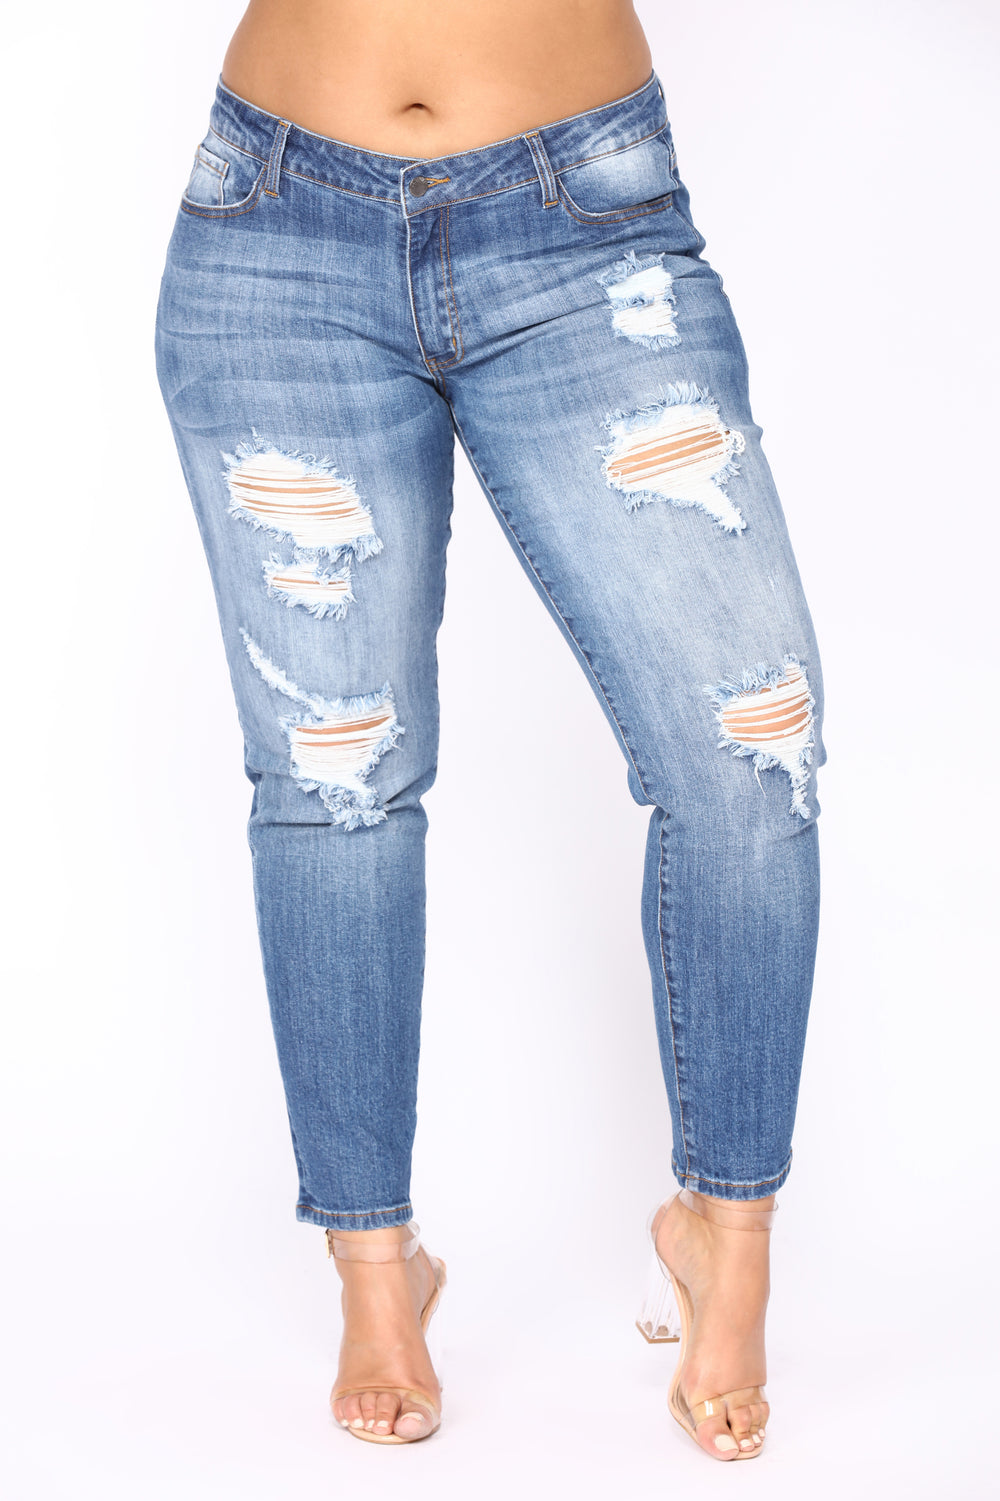 Lei Ann Skinny Jeans - Medium Blue Wash